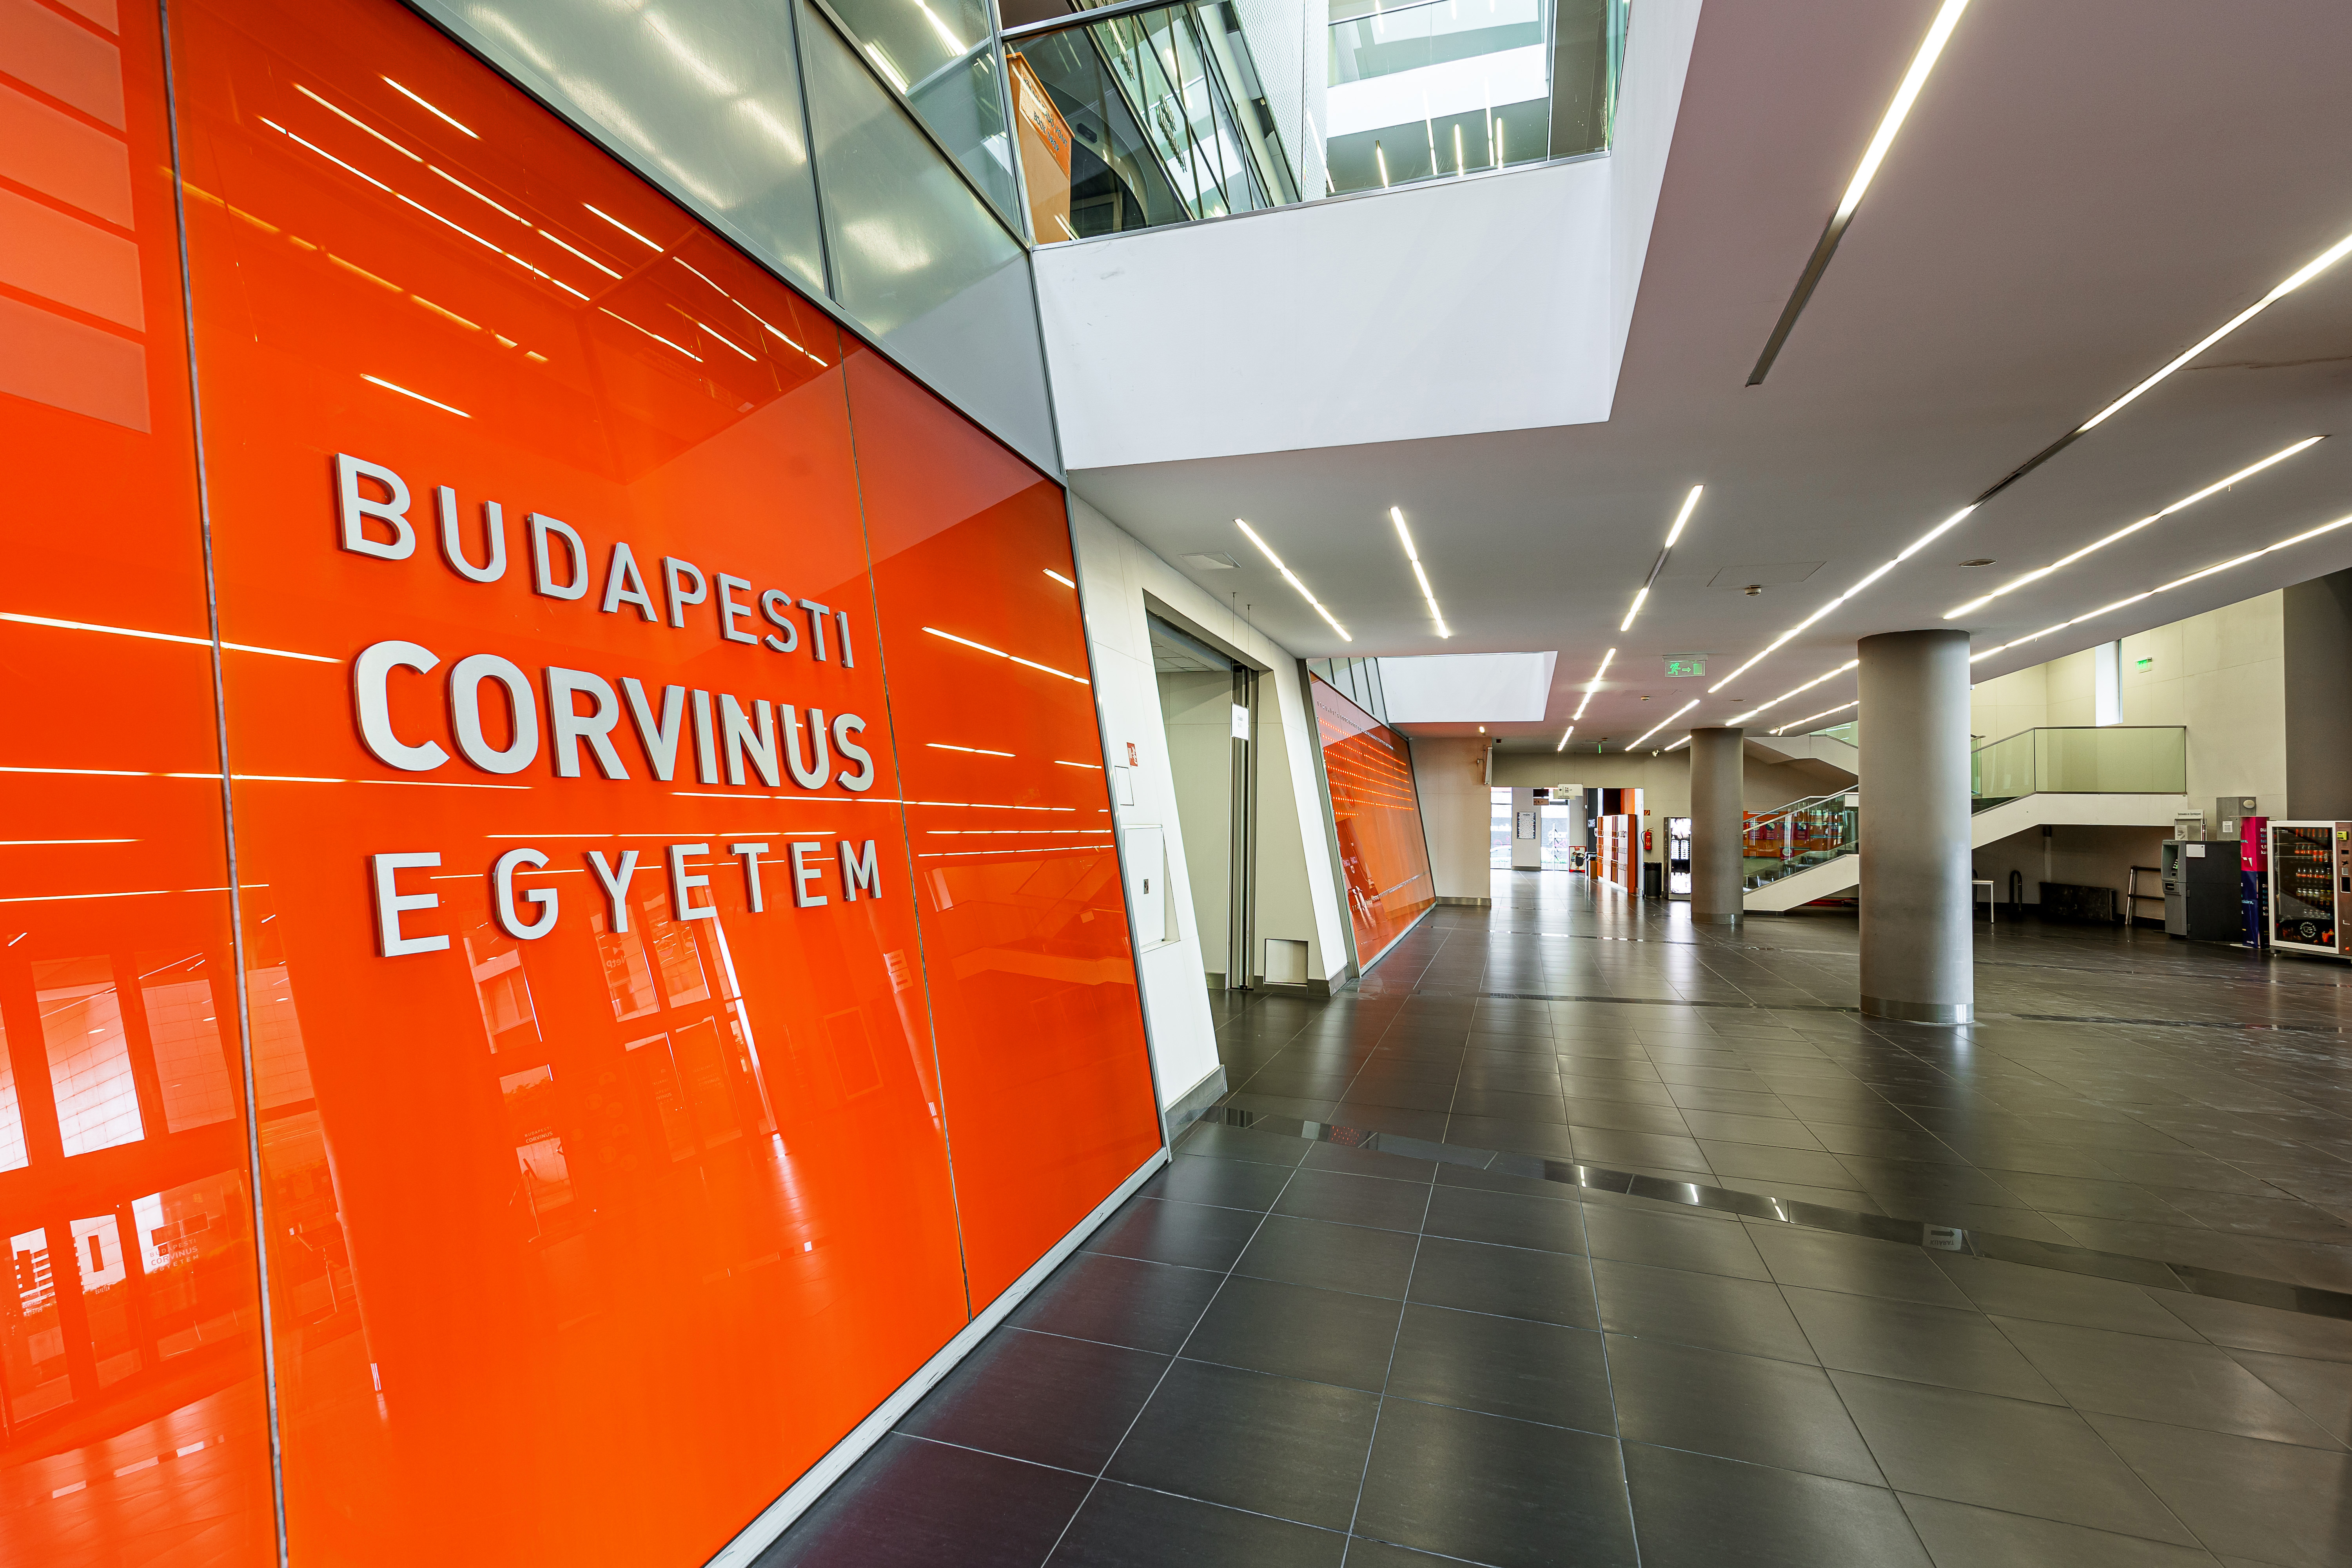 Corvinus Institute for Advanced Studies